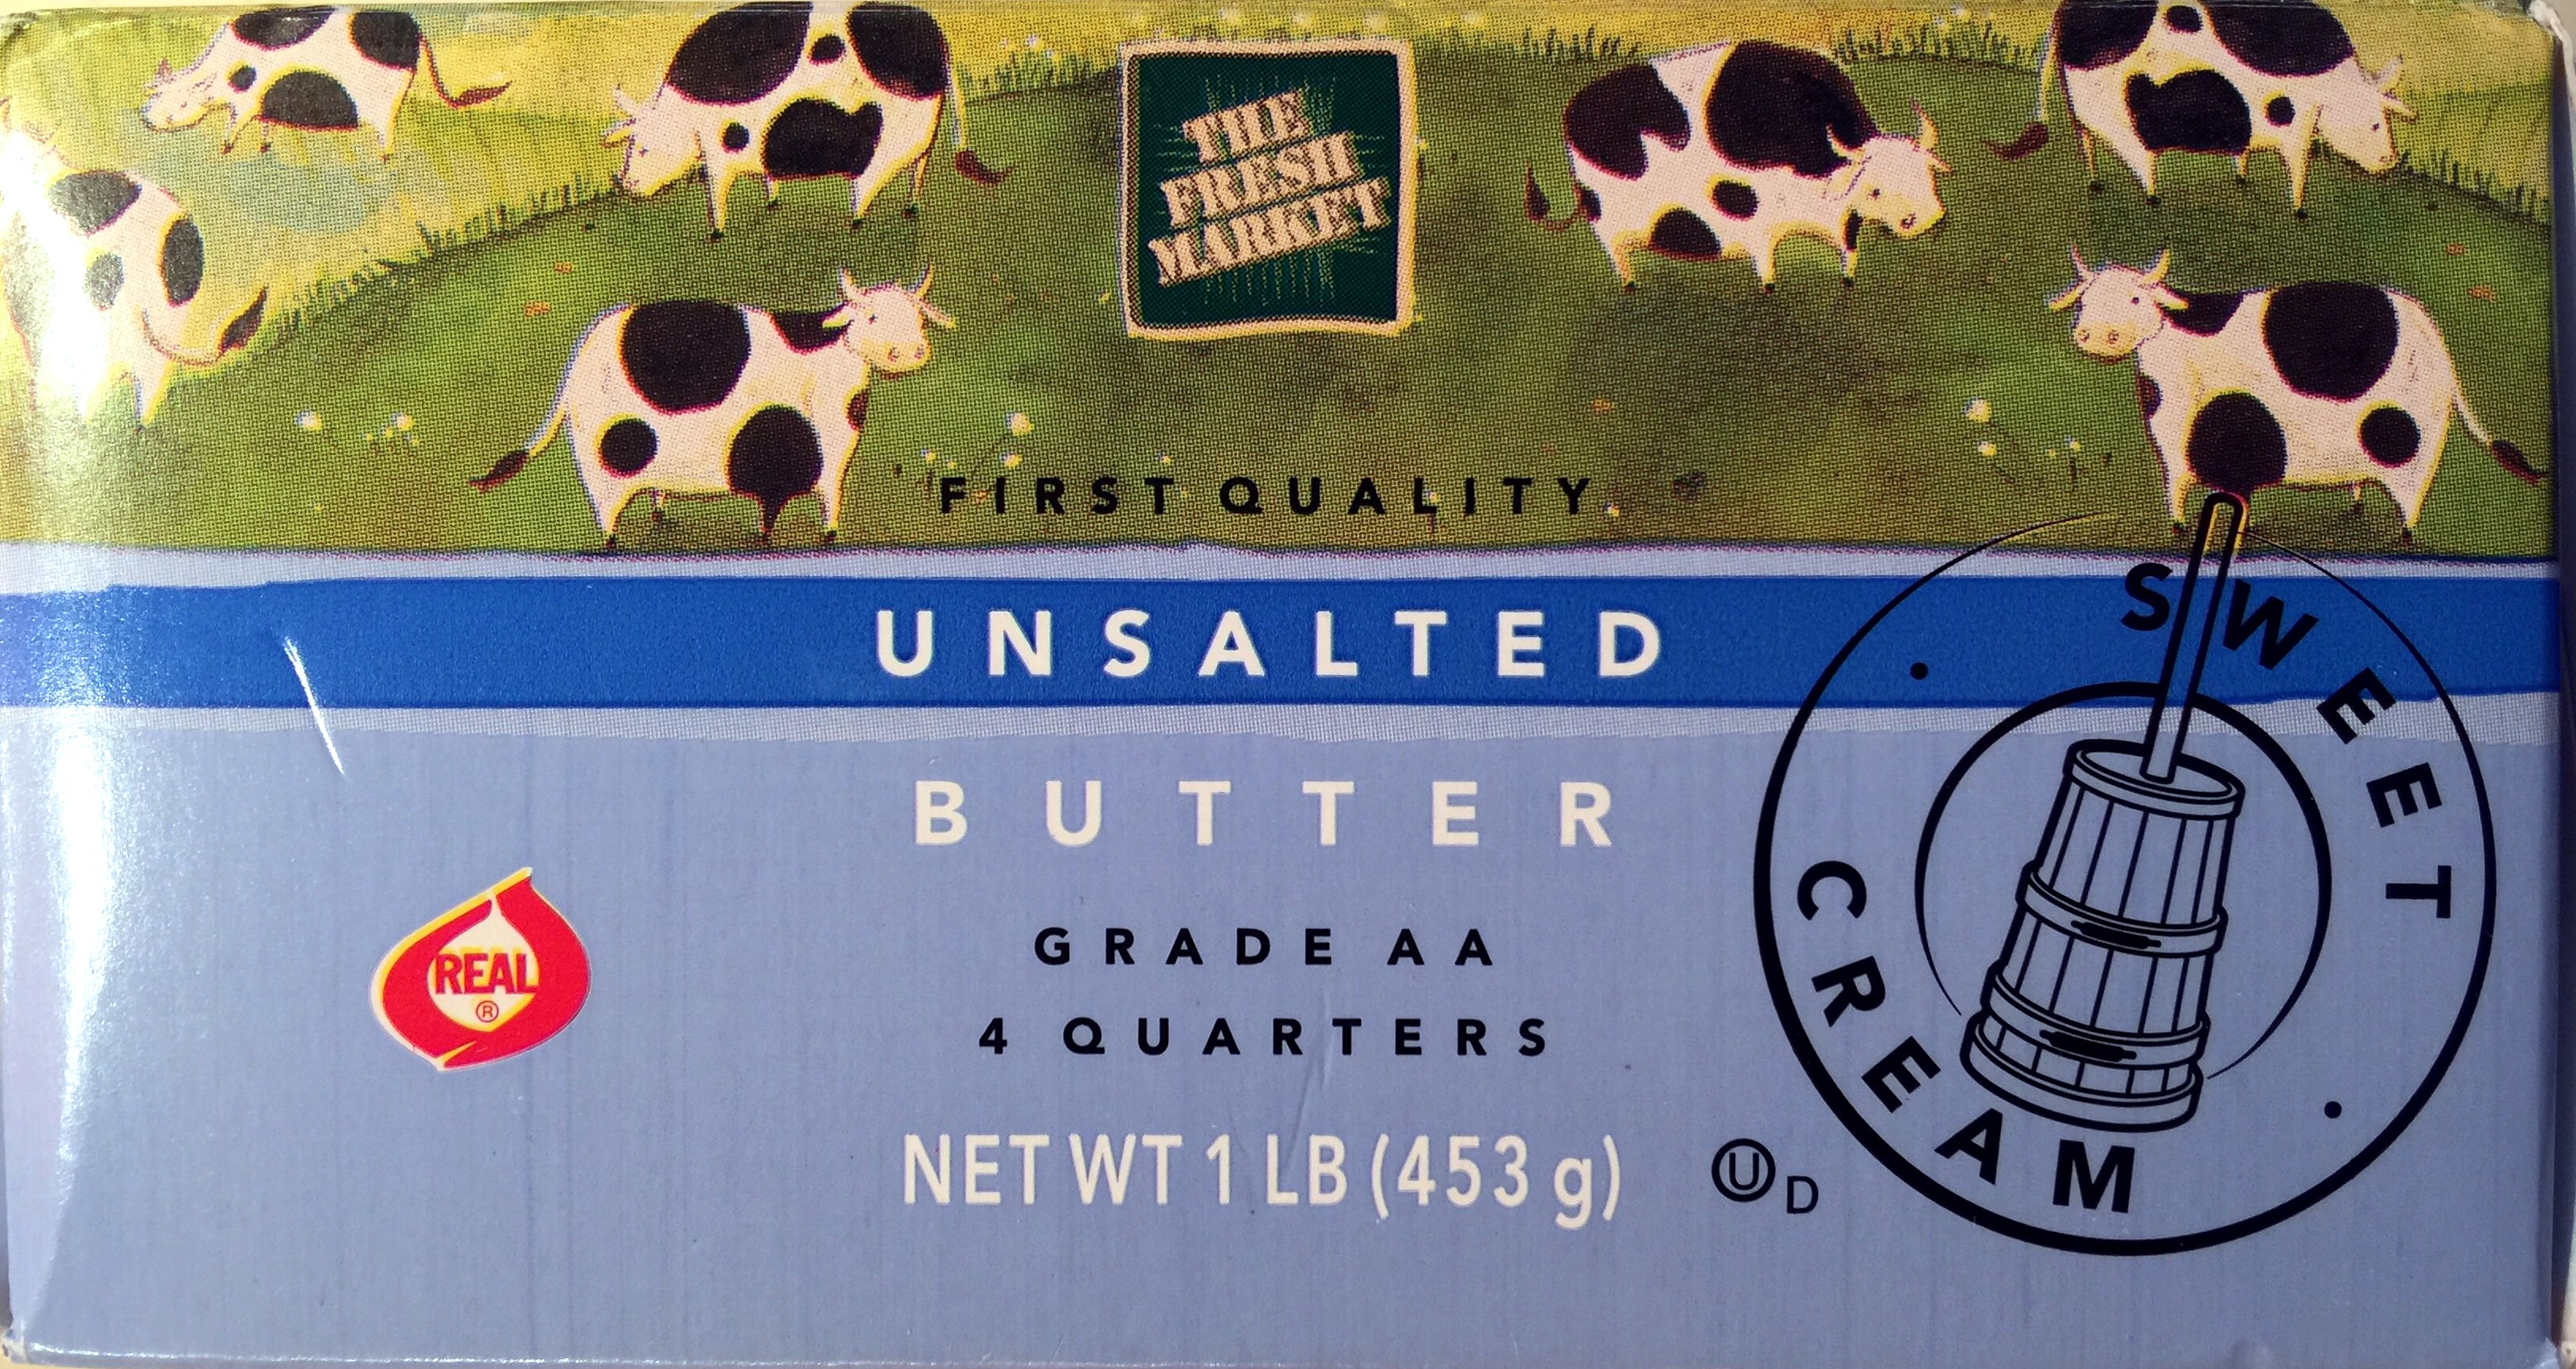 Grade AA Unsalted Butter - Produkt - en